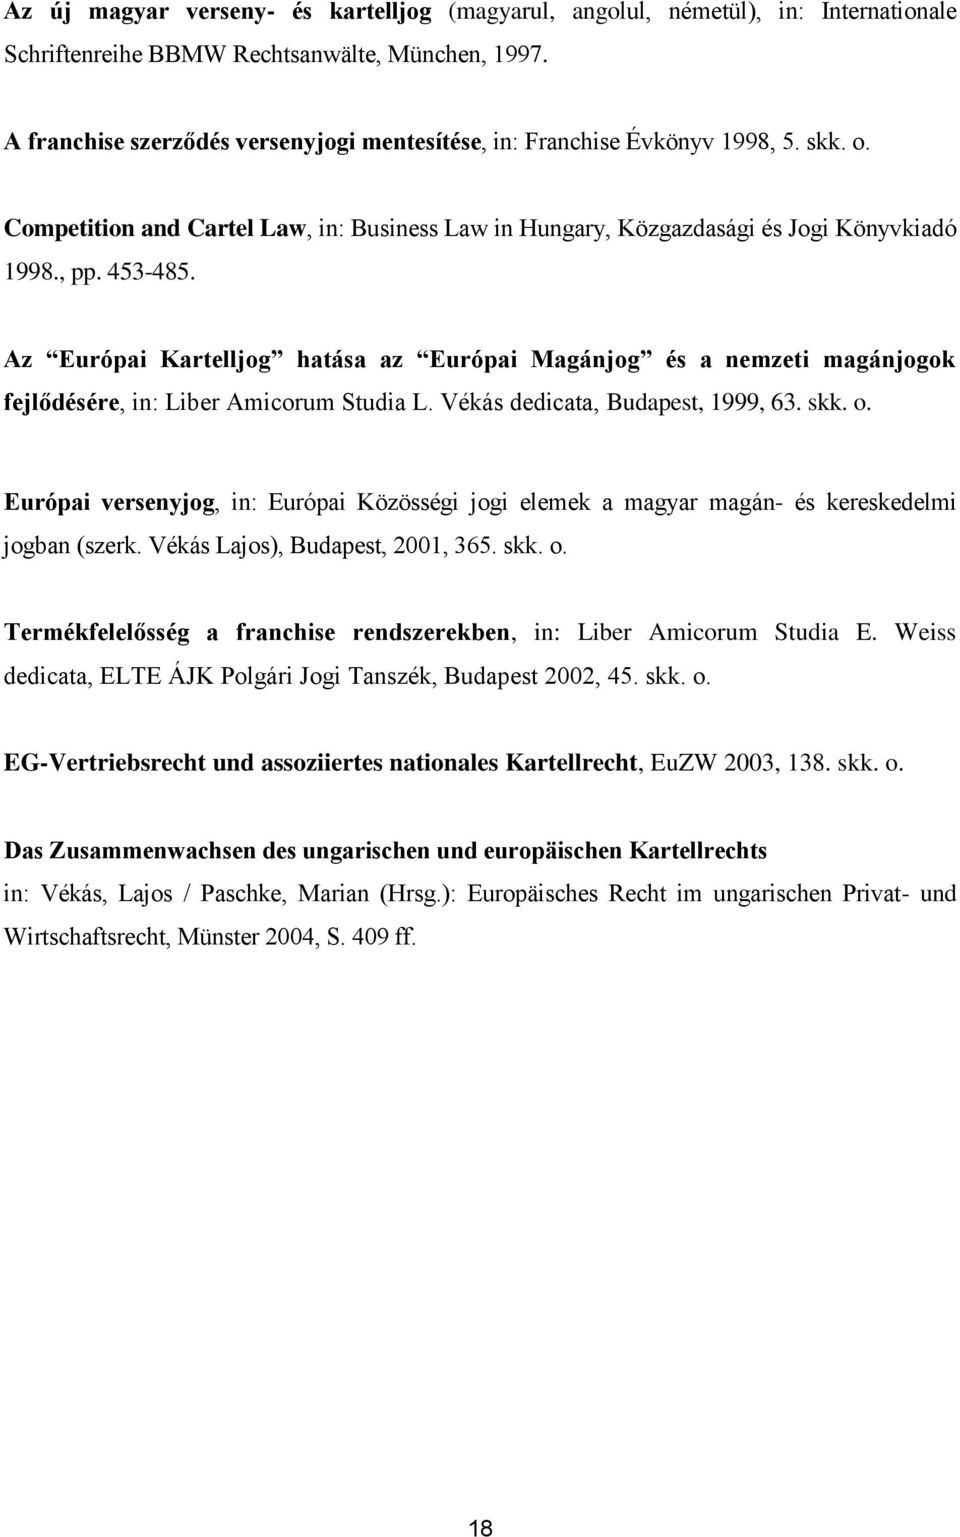 Az Európai Kartelljog hatása az Európai Magánjog és a nemzeti magánjogok fejlődésére, in: Liber Amicorum Studia L. Vékás dedicata, Budapest, 1999, 63. skk. o.